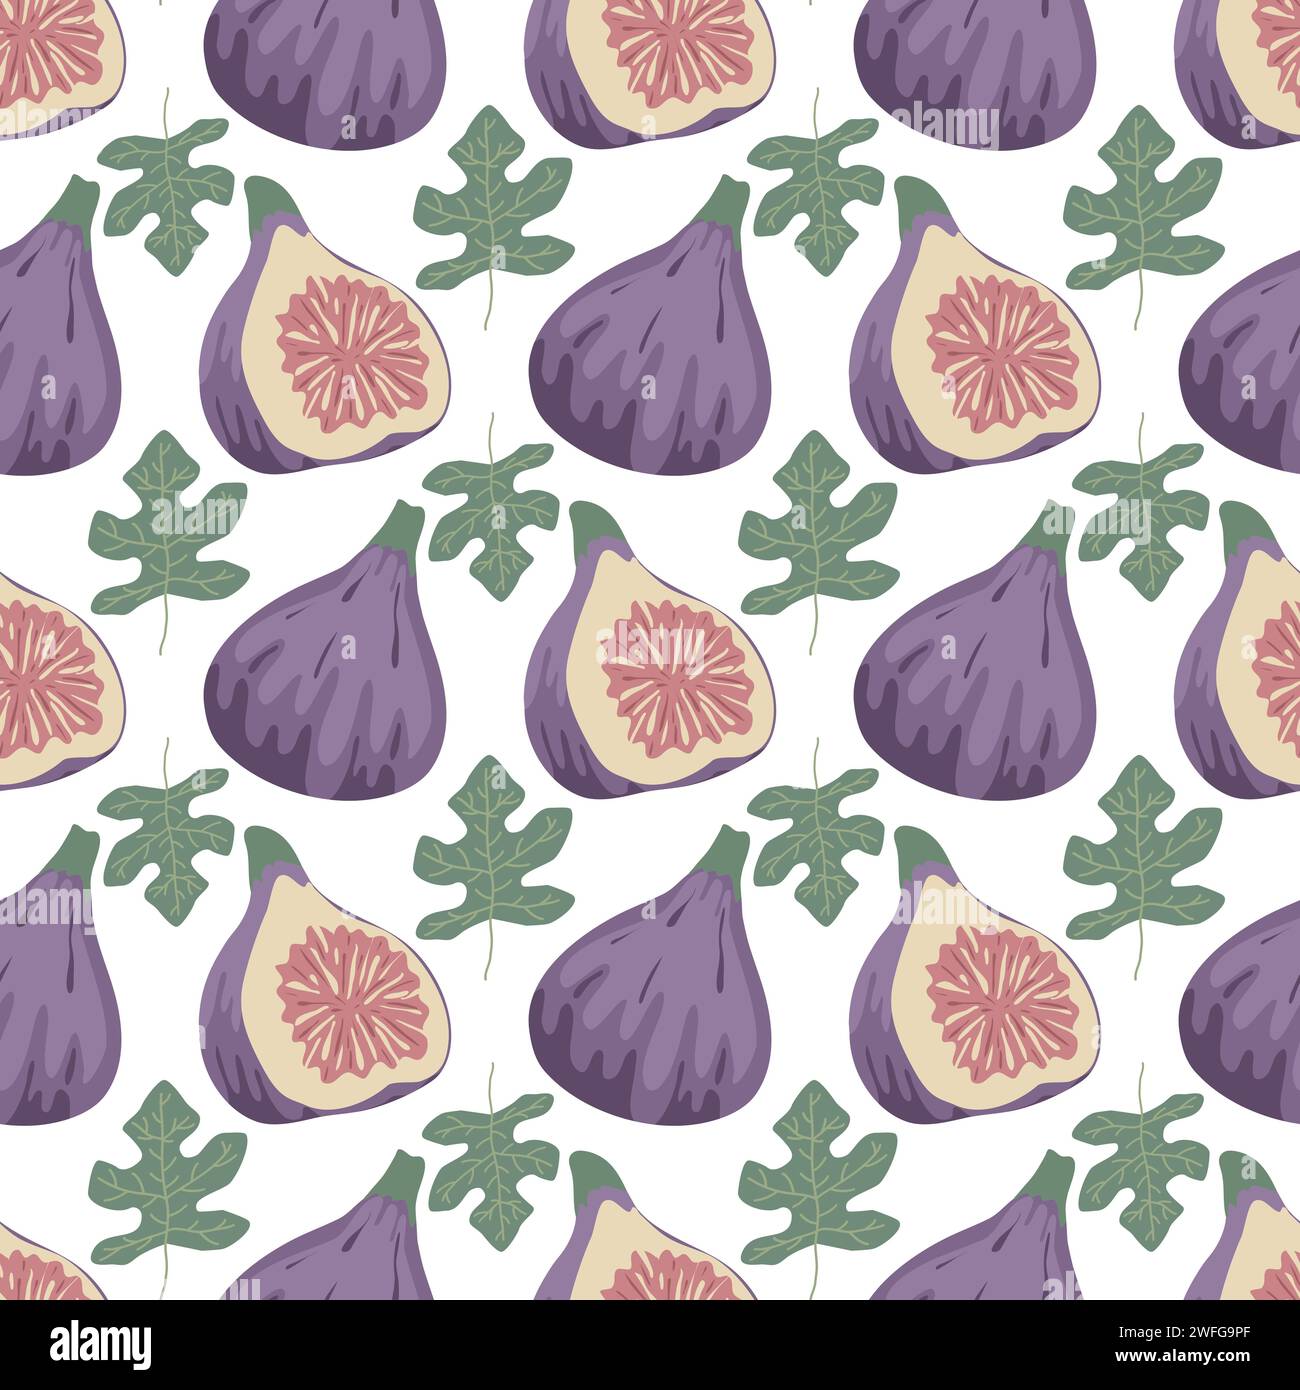 Nahtloses Muster reifer Feigenfrüchte. Hintergrund mit violetten ganzen Feigen, Hälften und Blättern. Handgezeichneter, fruchtiger Sommerdruck. Gesundes Bio-Food-Ornament Stock Vektor